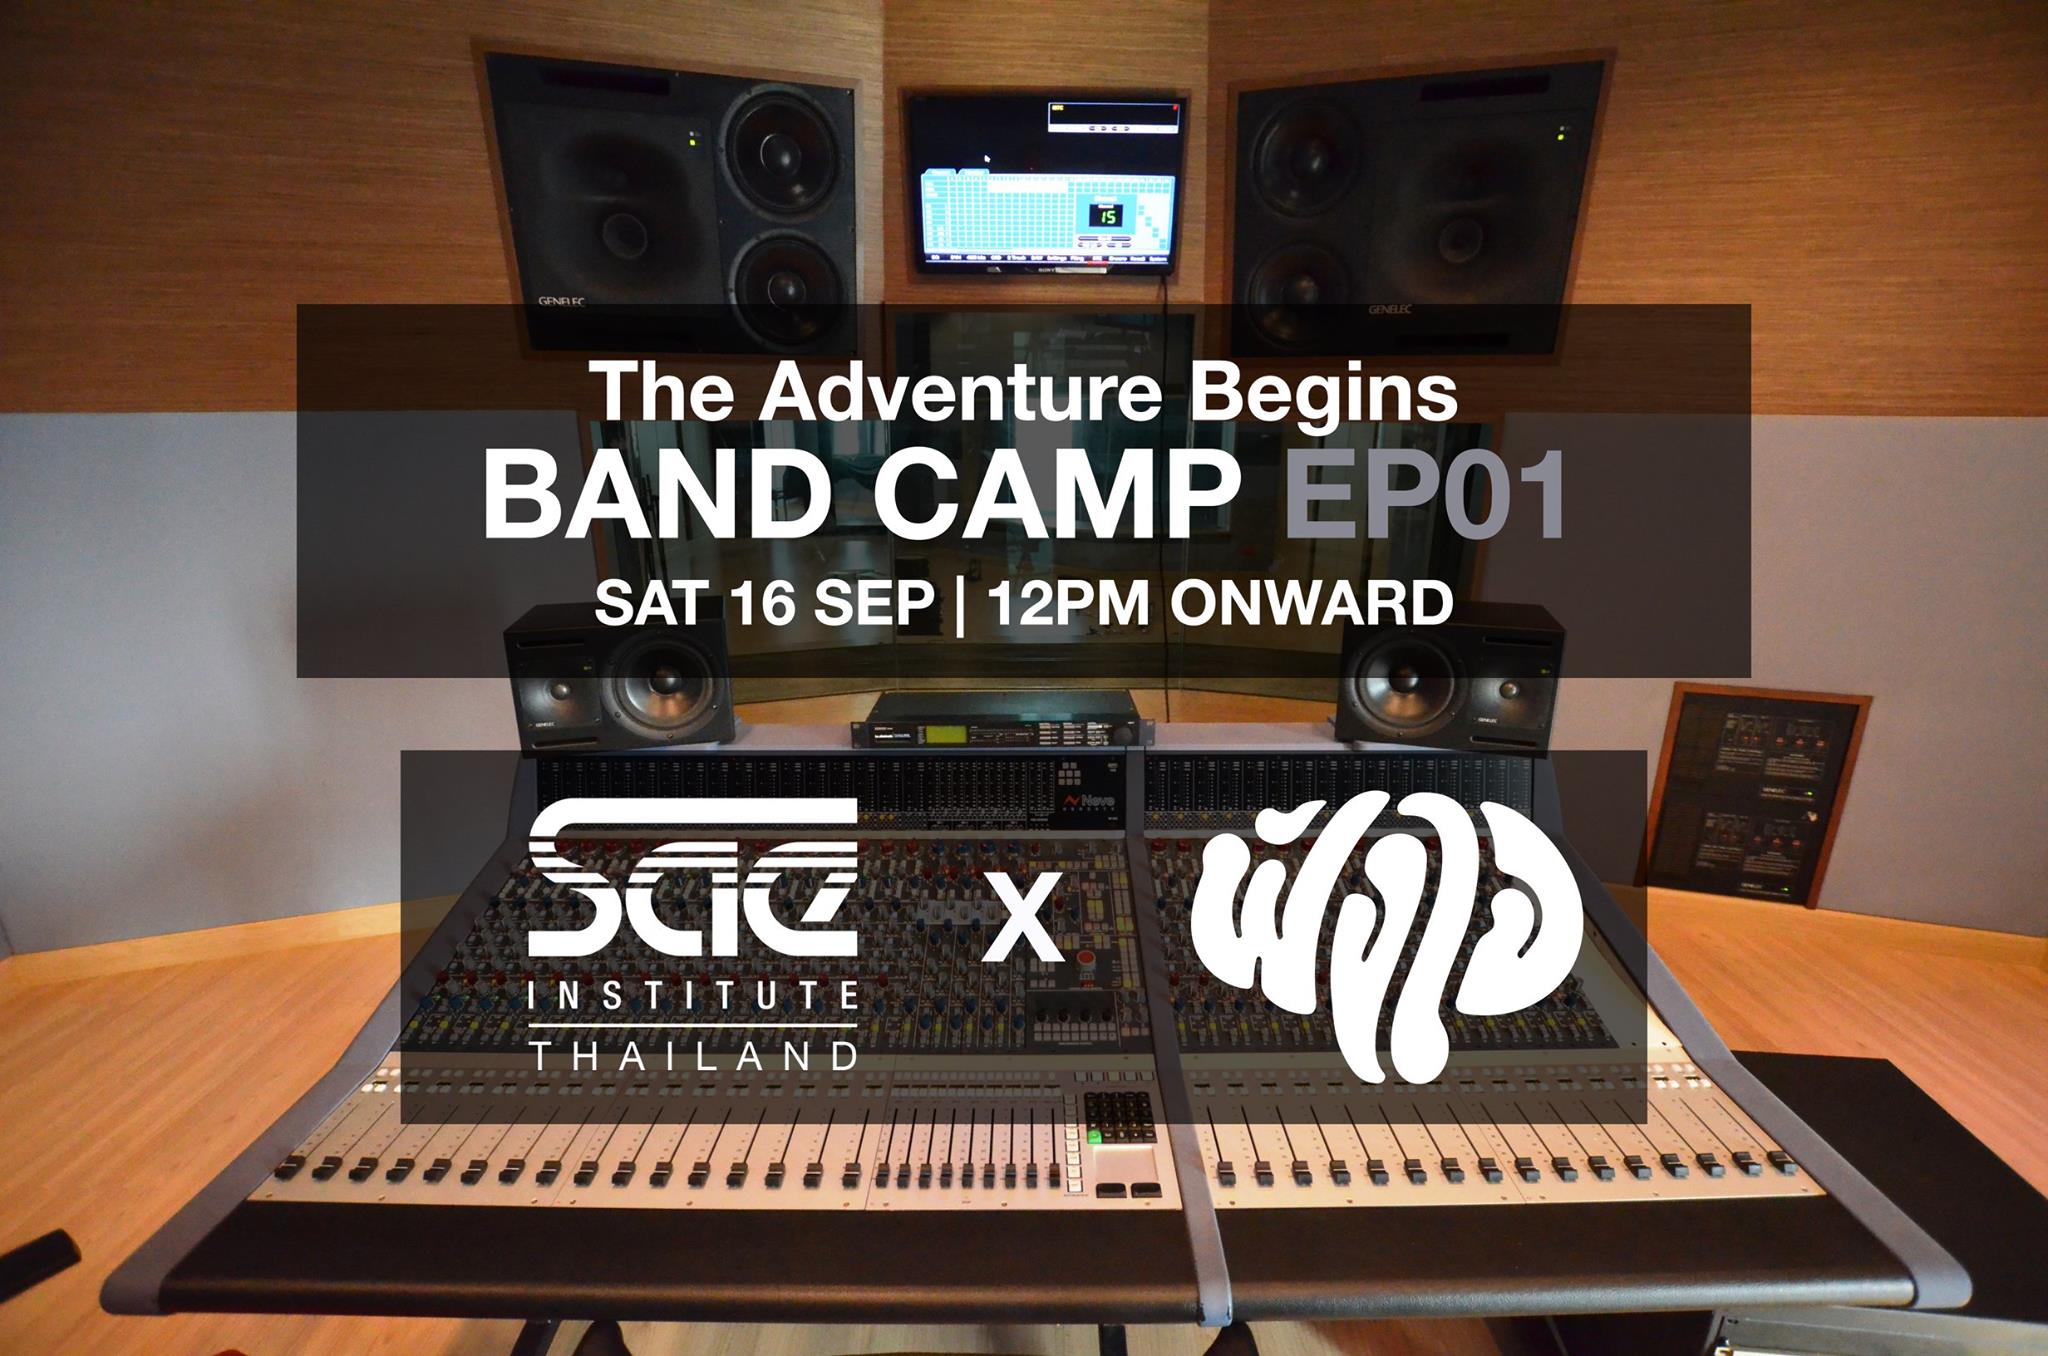 โหวตเพลงที่คุณชอบ ให้พวกเขากลายเป็นศิลปินเต็มตัวกับ SAE Institute Thailand BAND CAMP EP01